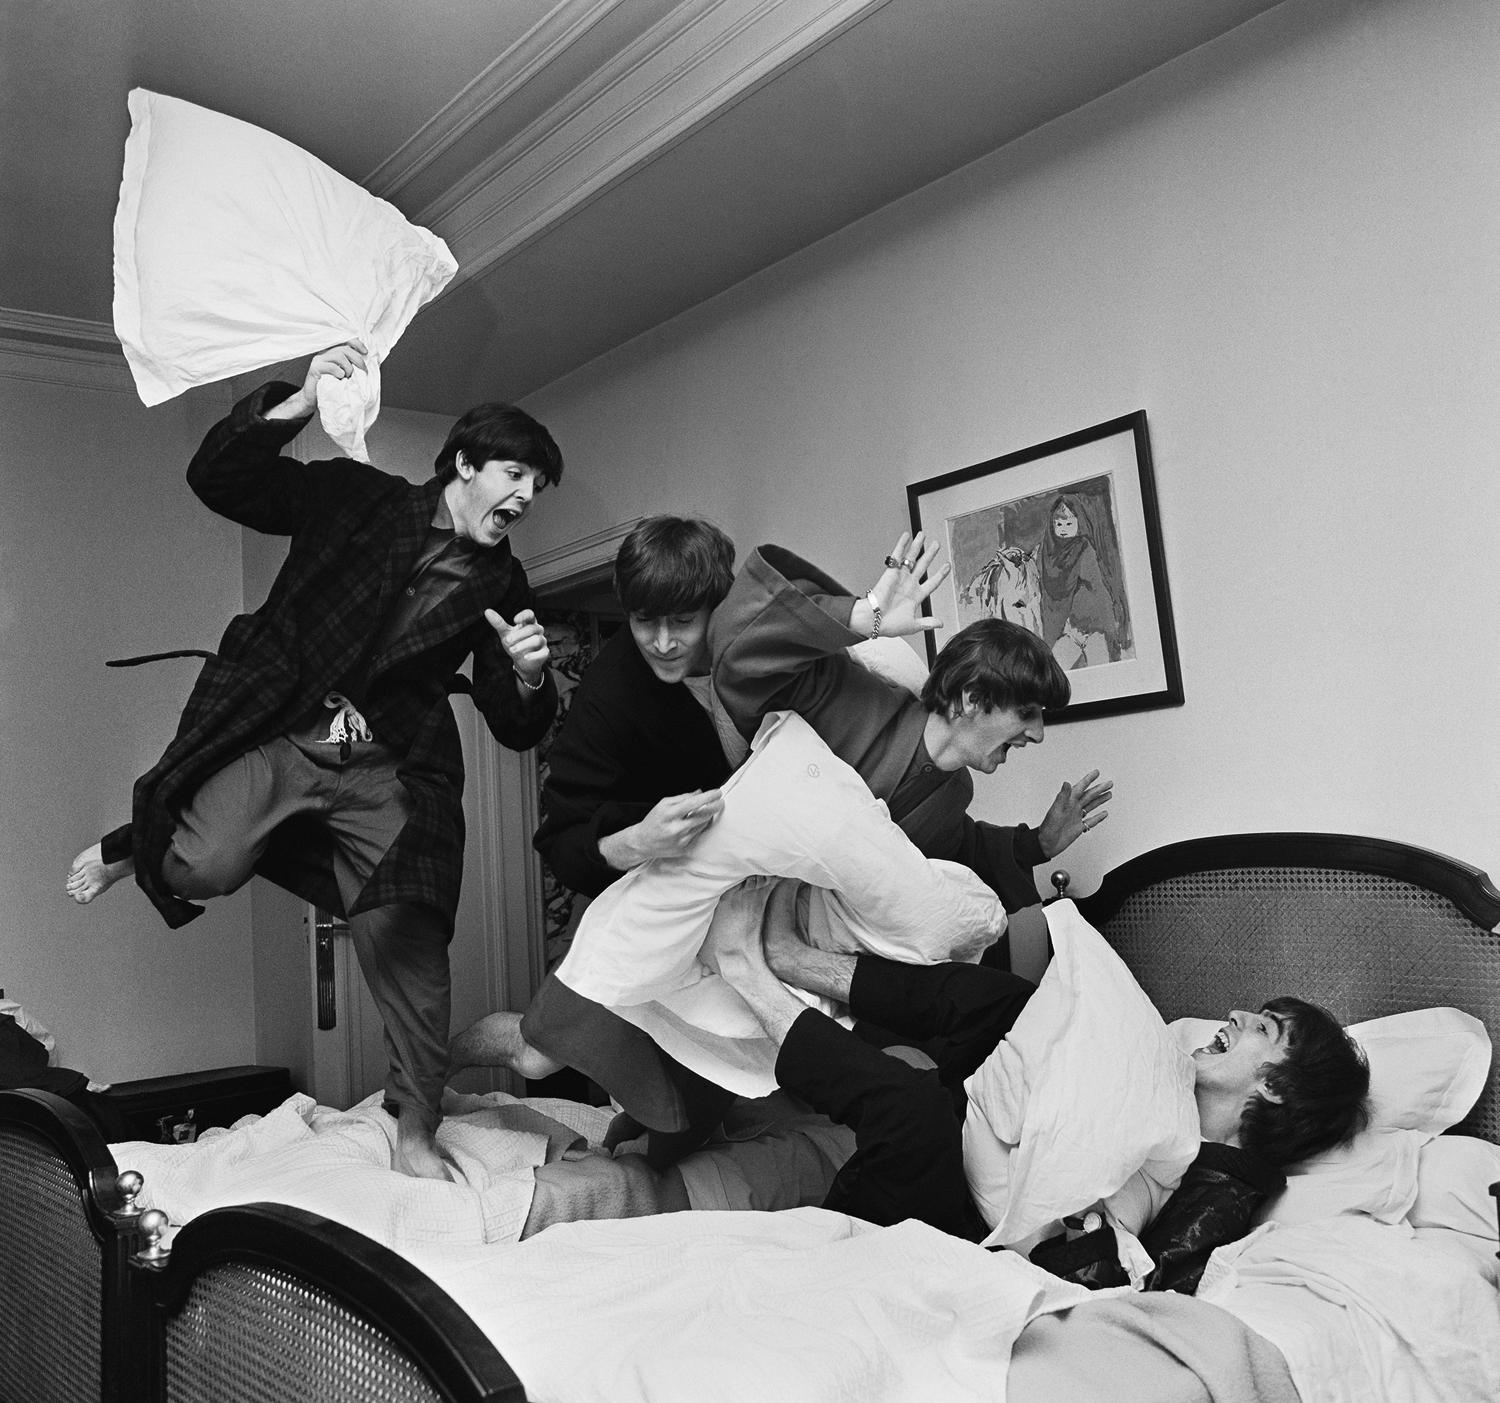 Harry Benson est né près de Glasgow, en Écosse. Le photographe a été désigné pour voyager avec les Beatles lors de leur première tournée aux États-Unis en 1964. Sa photo emblématique montre le groupe en train de faire une joyeuse bataille de